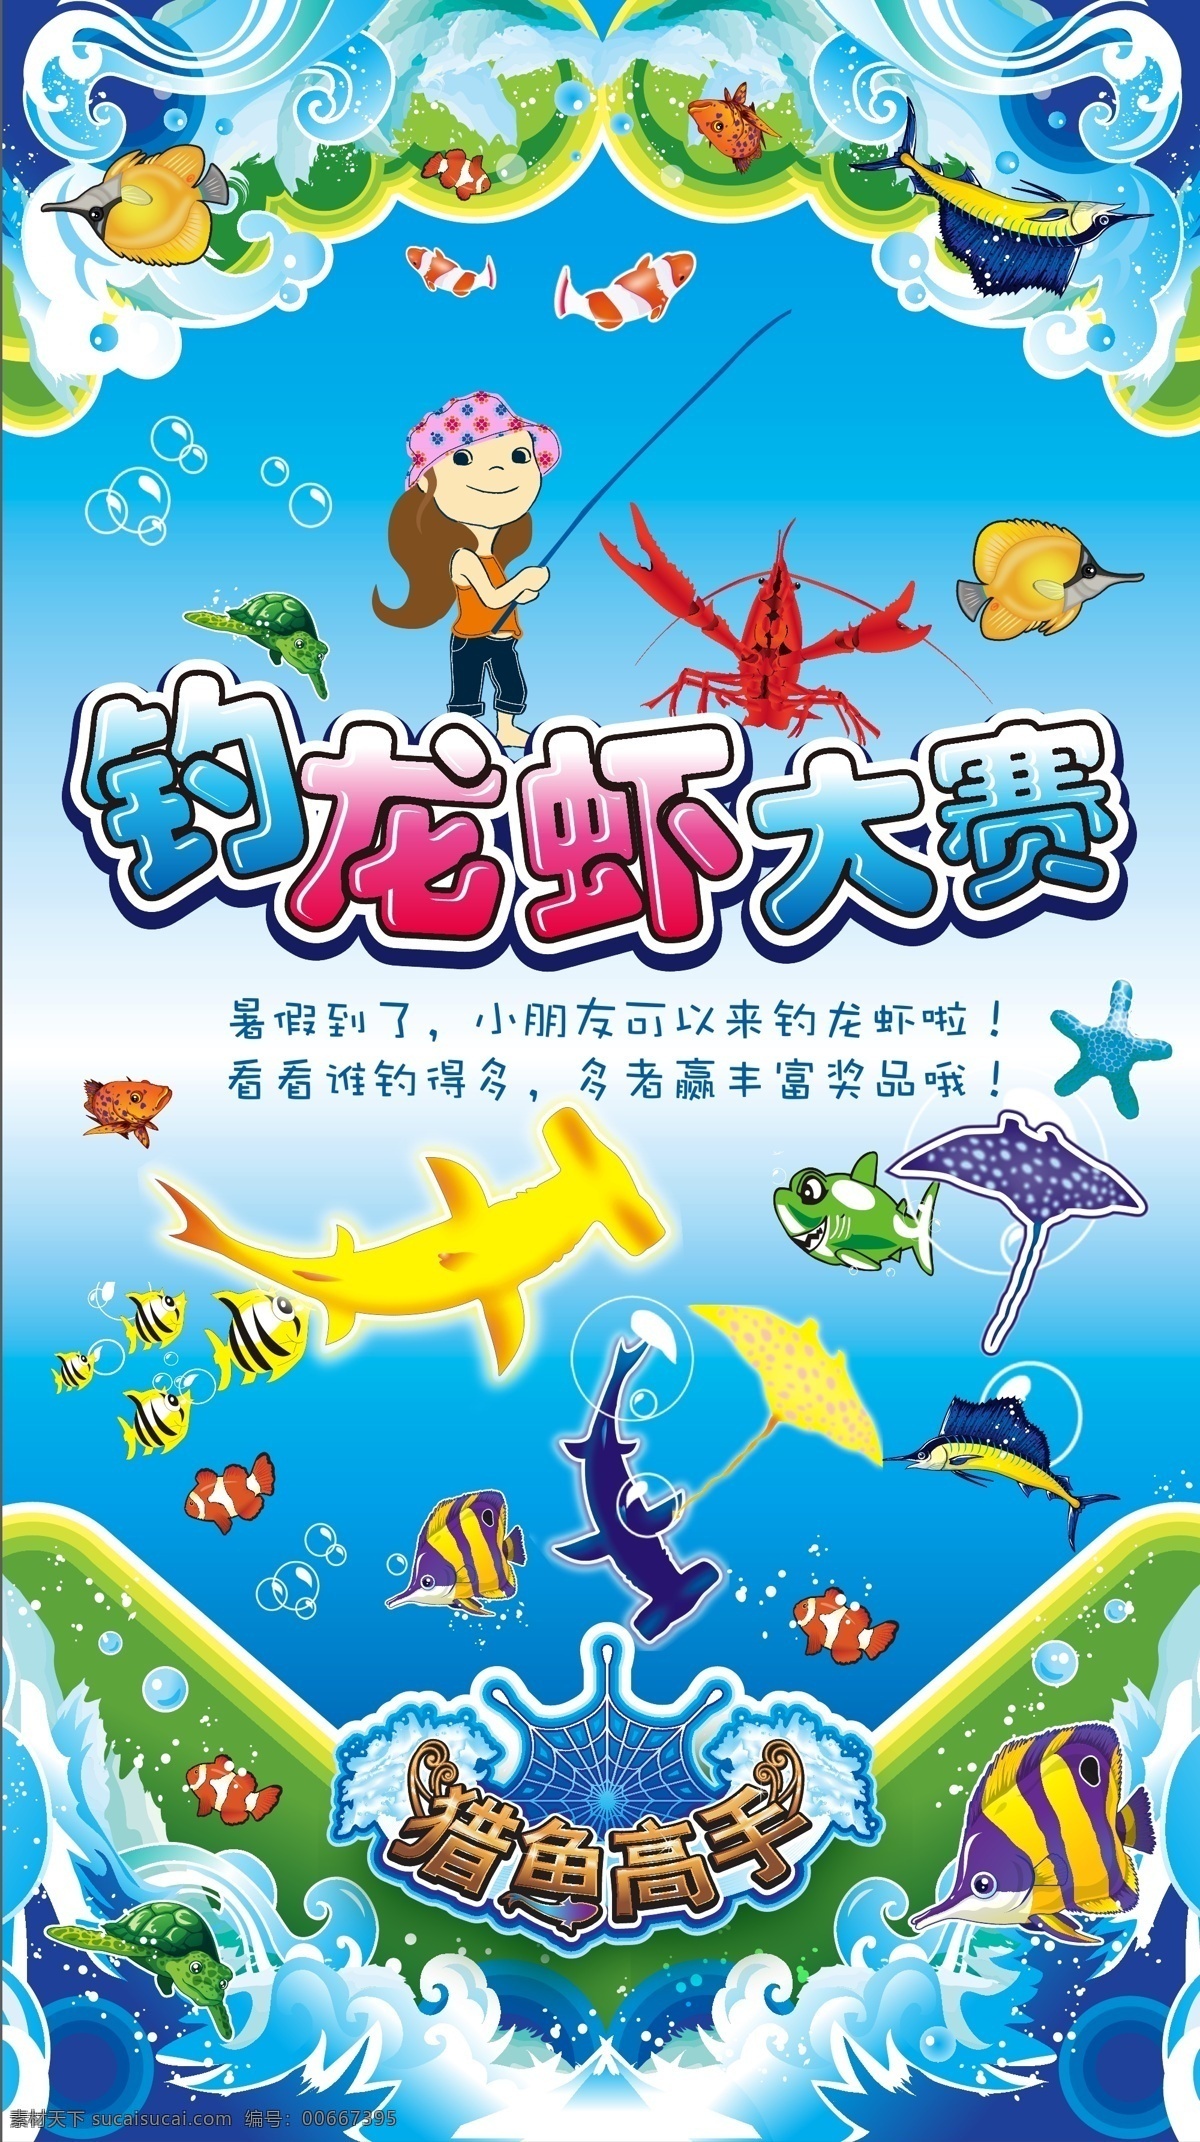 捕鱼达人 钓龙虾 小朋友 儿童 卡通人物 卡通儿童 暑期比赛 暑期活动 鱼 鲸 海浪 龙虾 海星 设计矢量海报 矢量